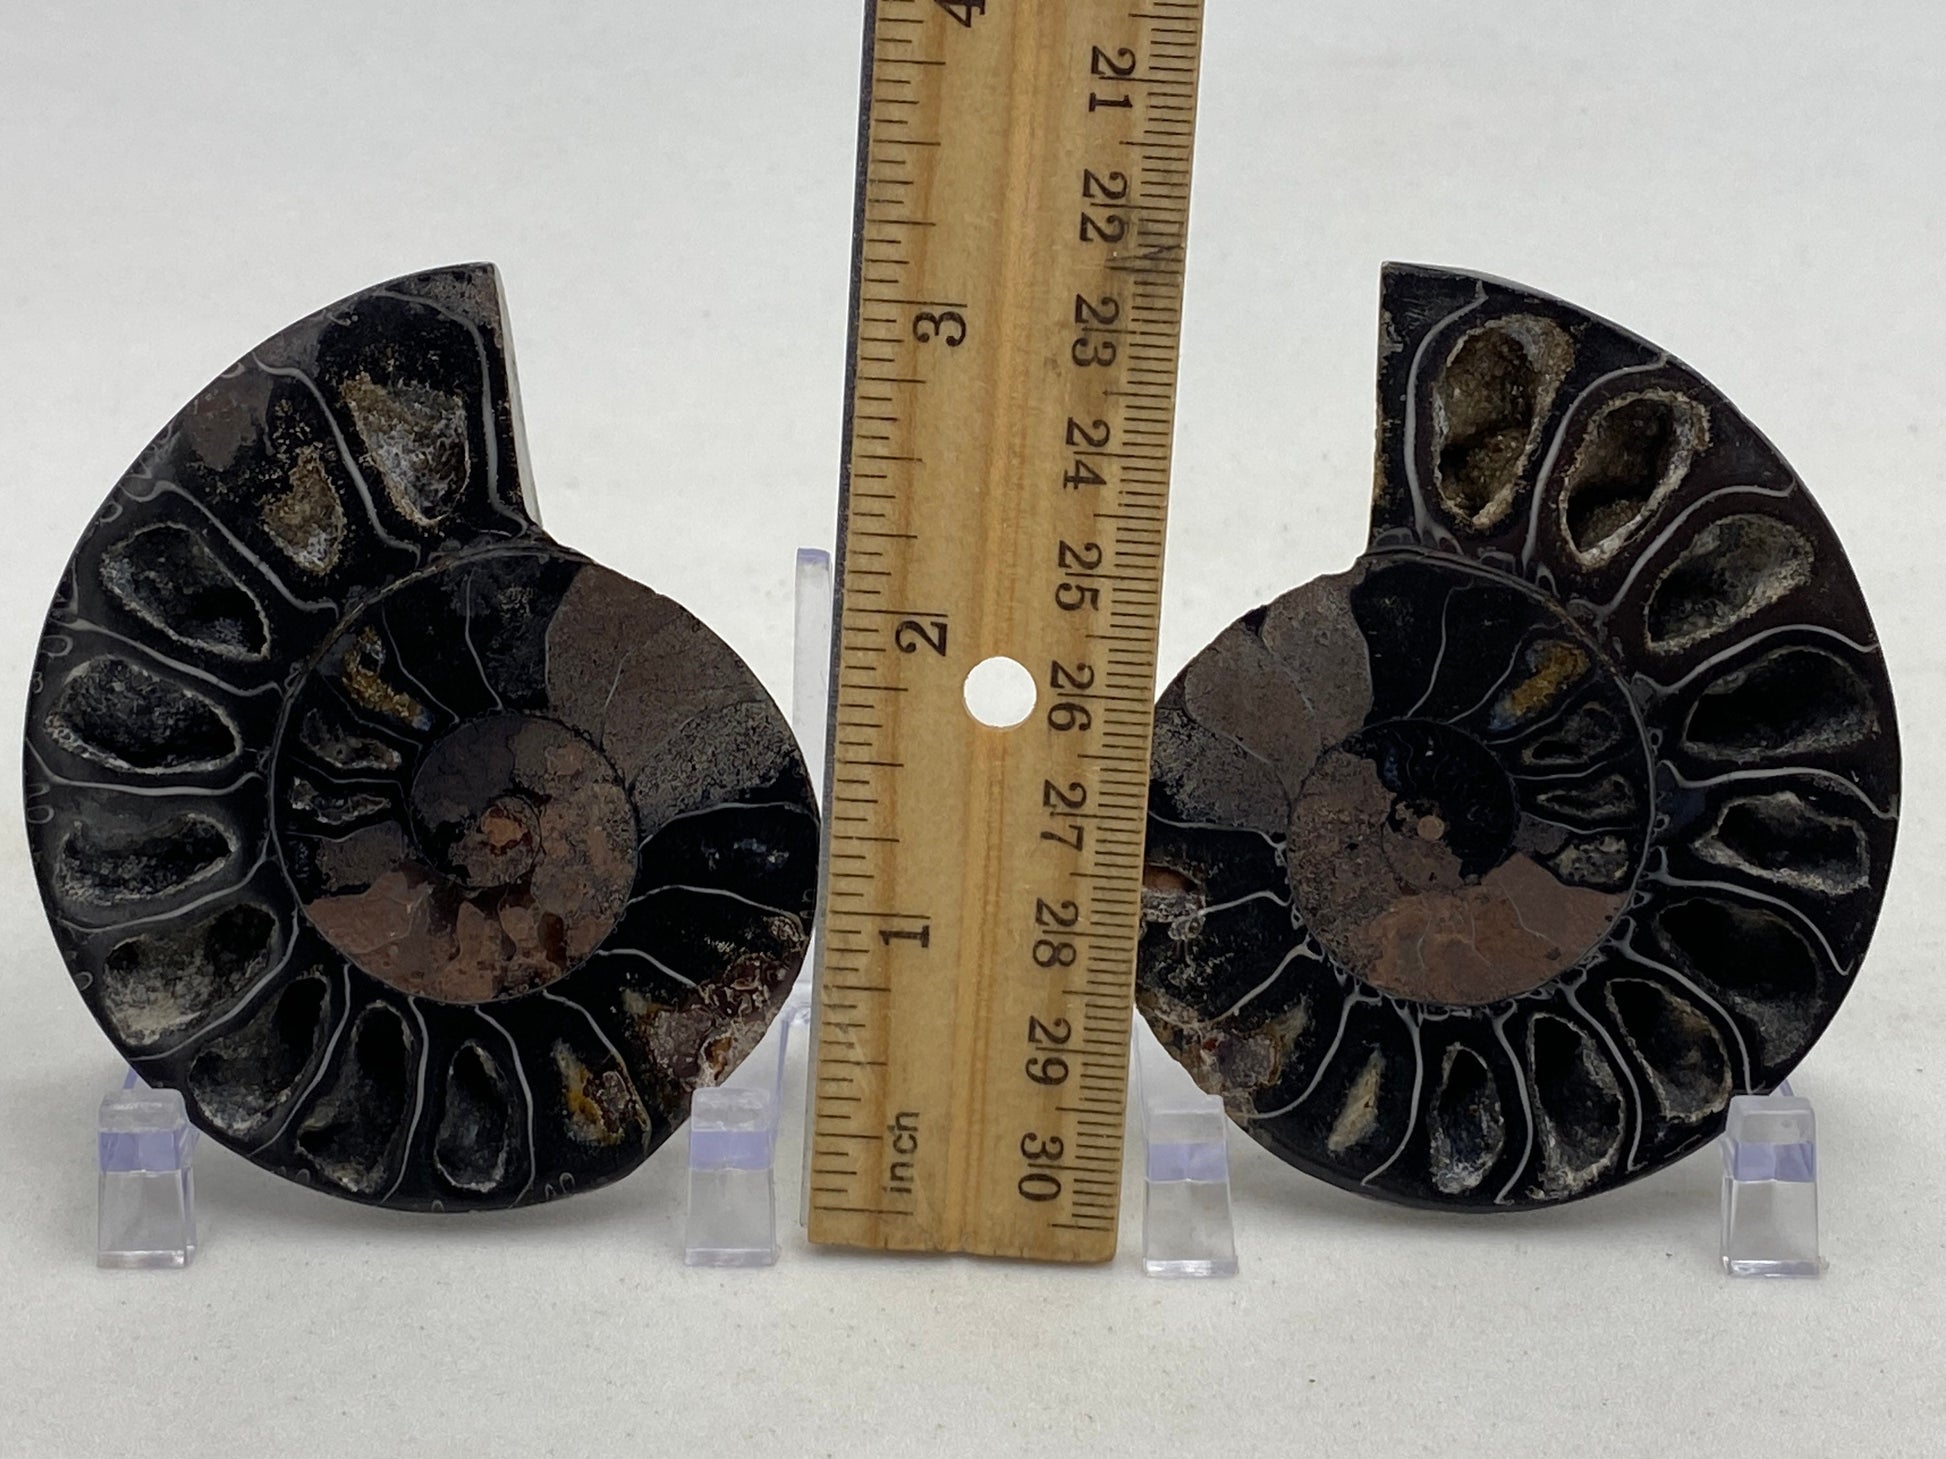 Small black ammonite fossil pair in acrylic stands - RocciaRoba